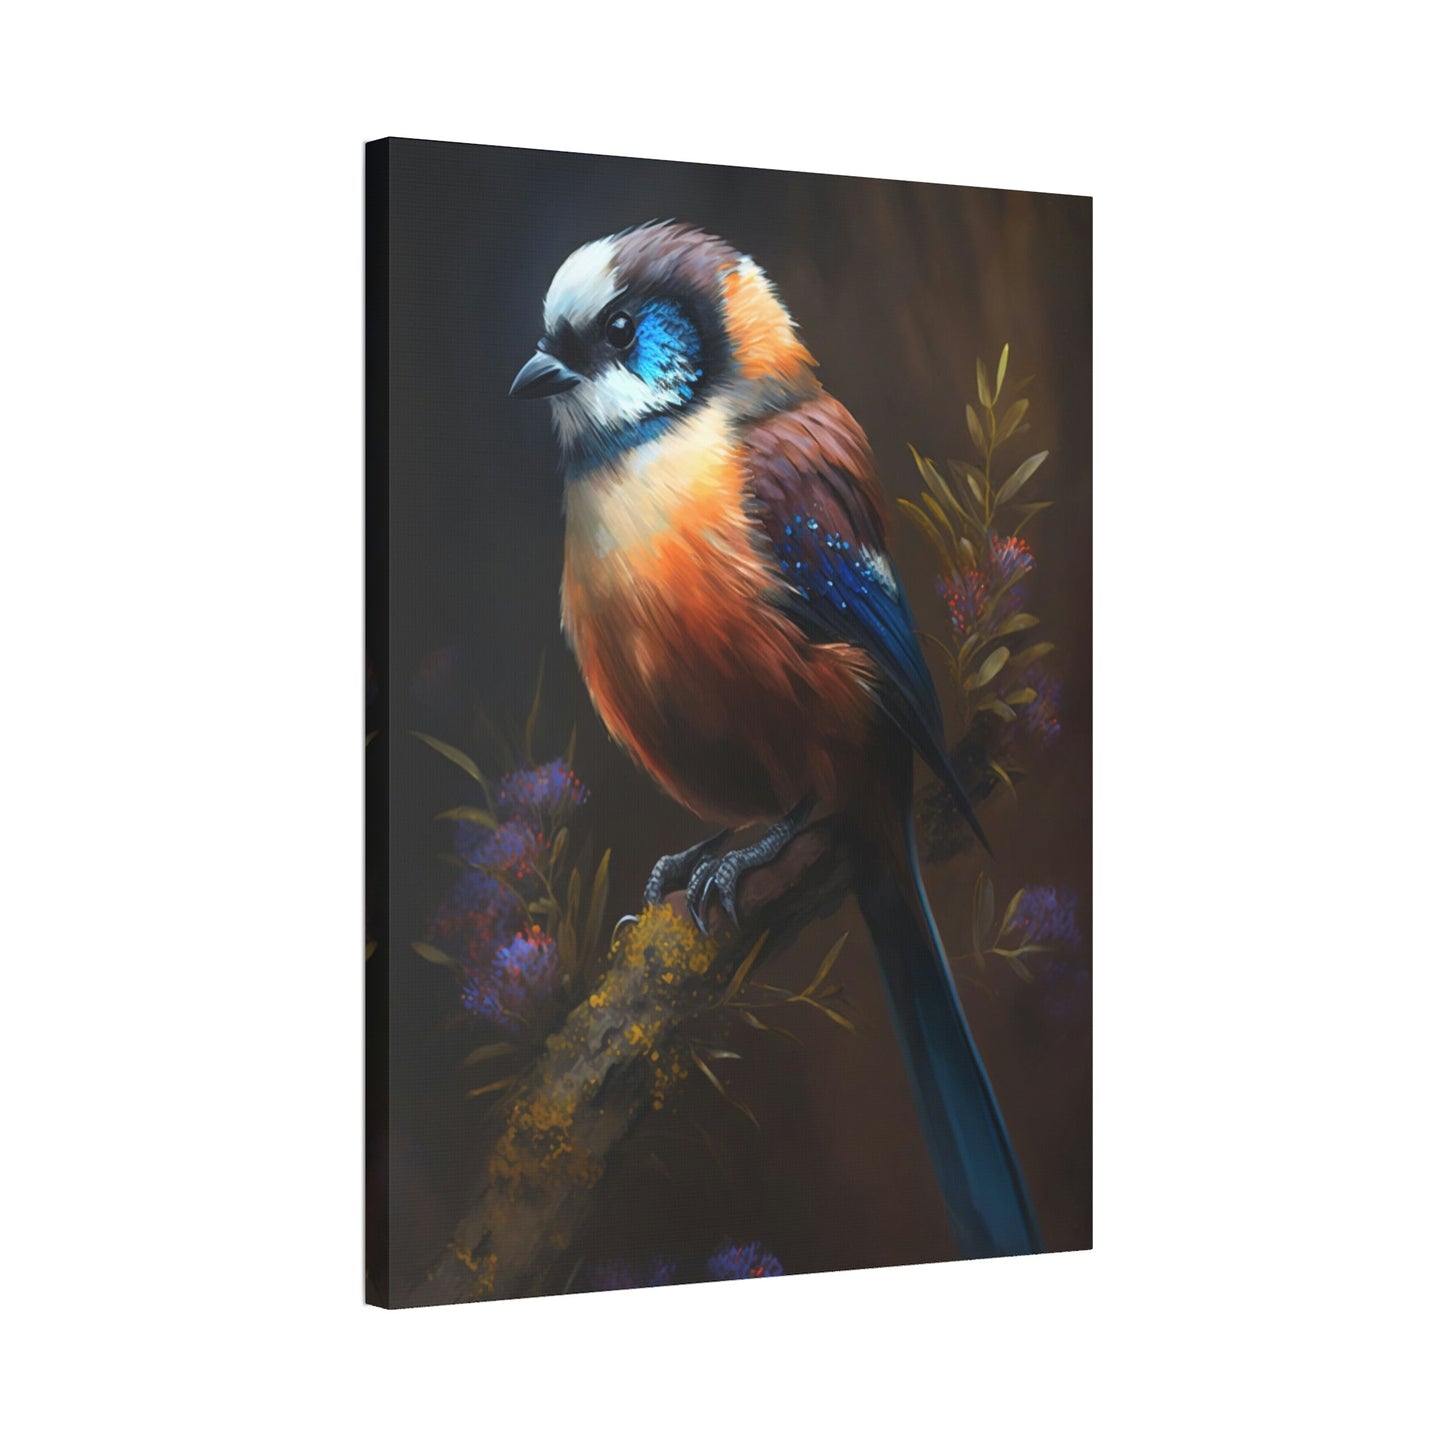 The Playful Bird: Canvas & Poster Wall Art of Bird Frolicking in a Field